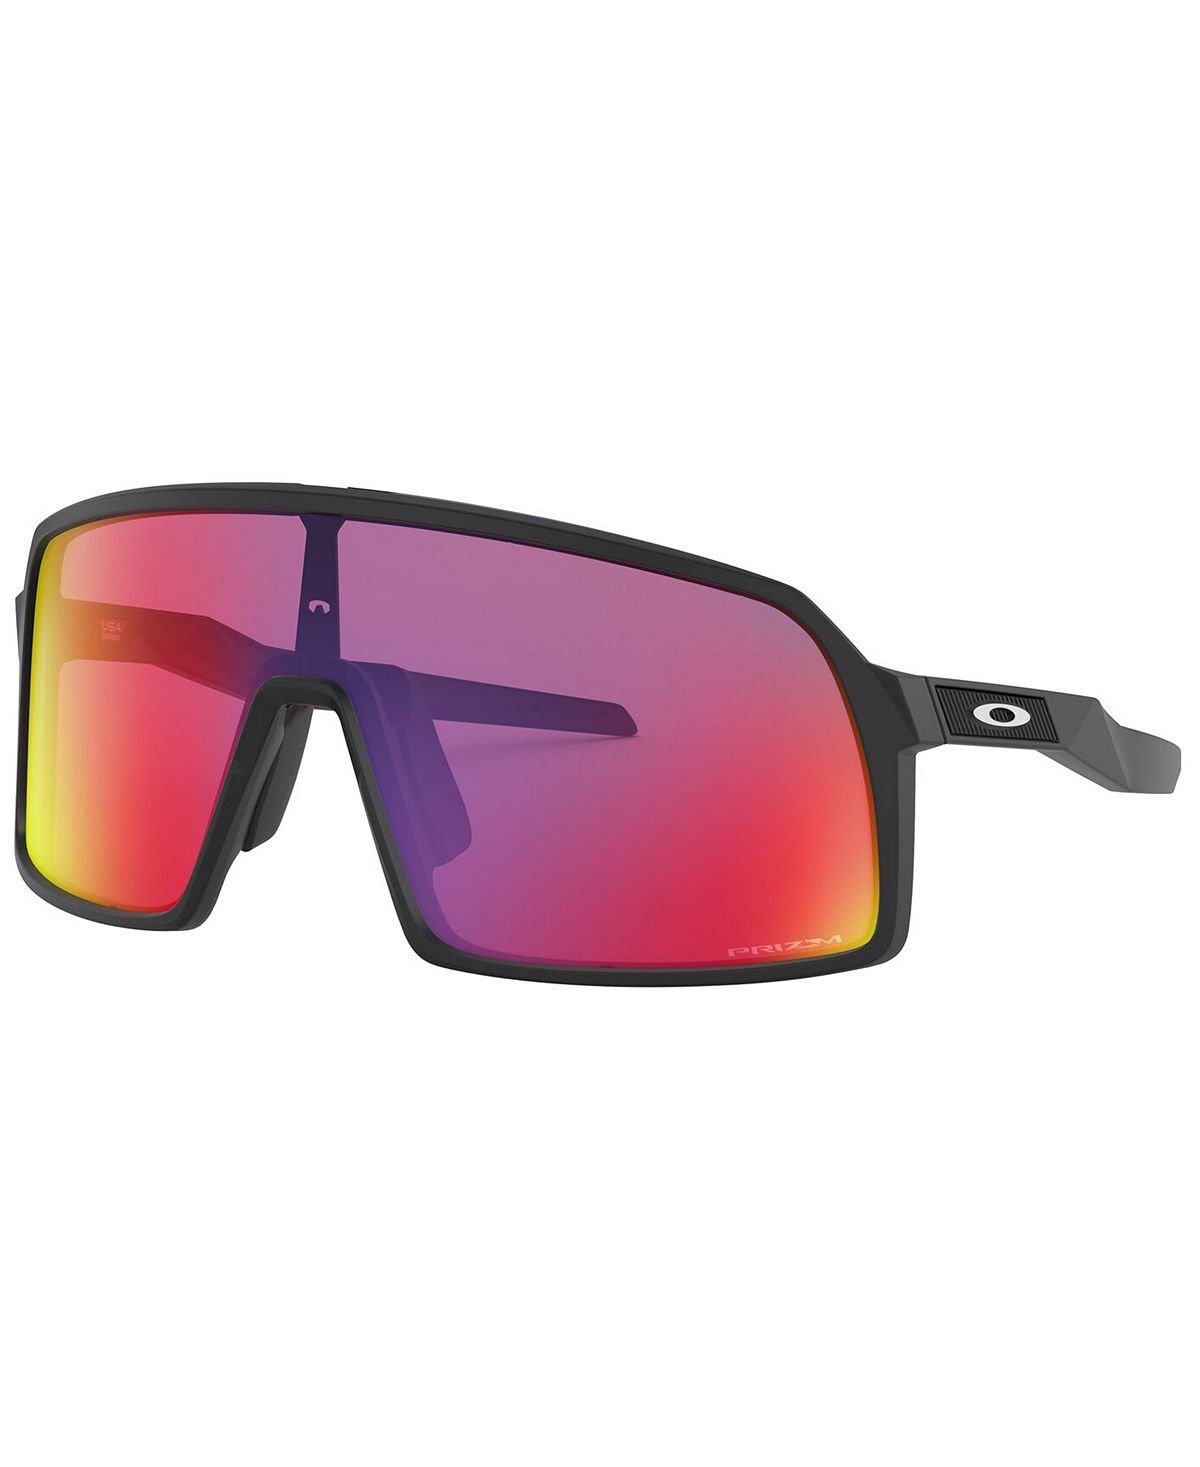 Мужские солнцезащитные очки sutro, oo9462 28 Oakley, мульти